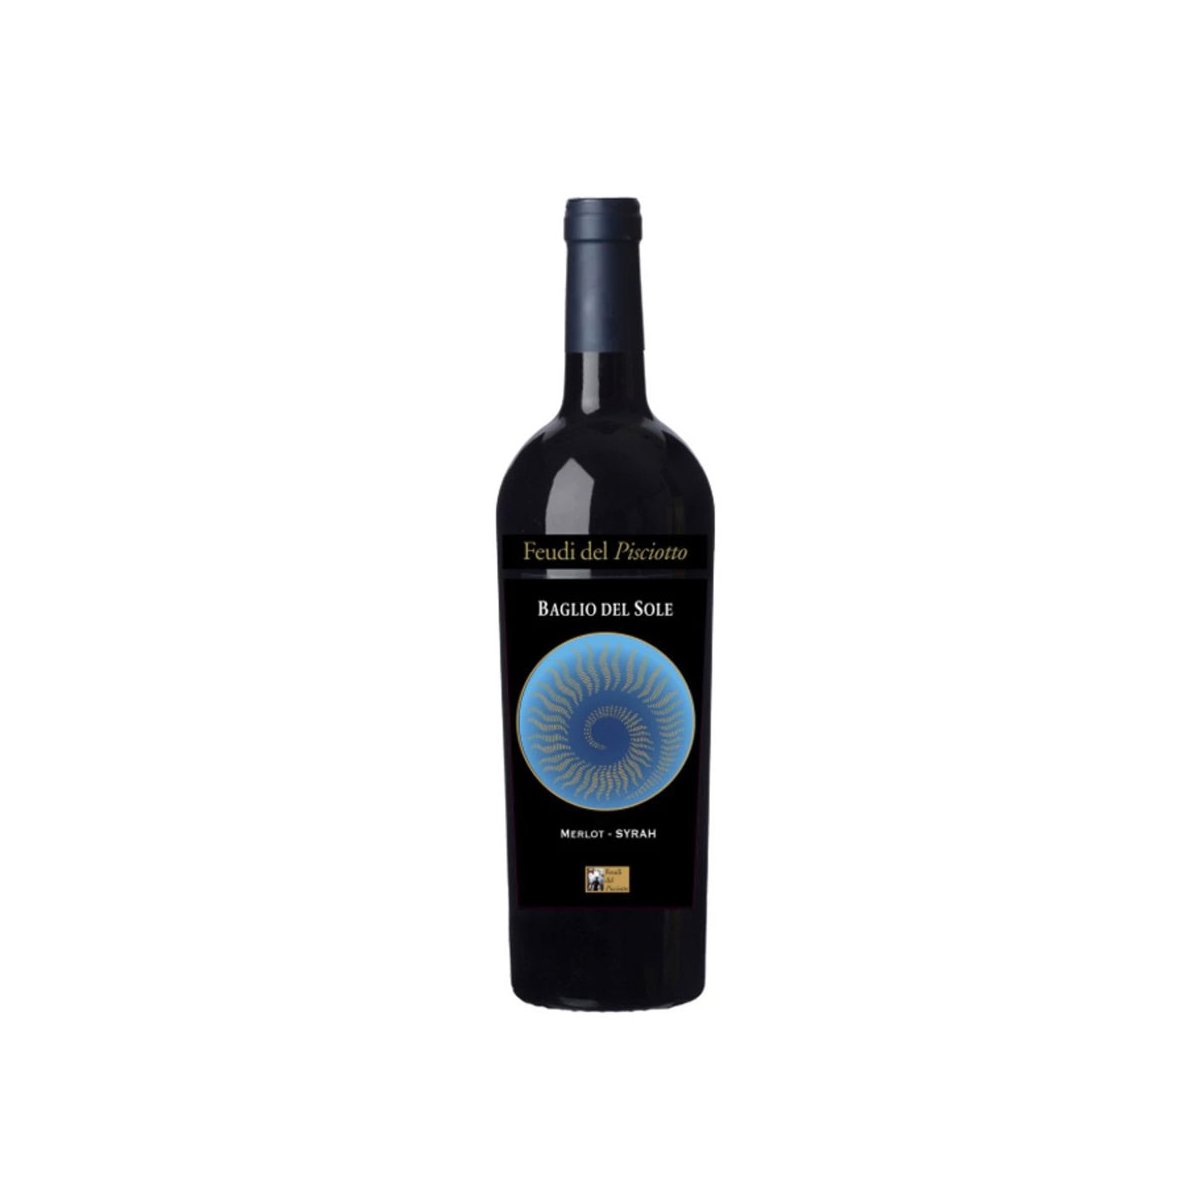 Vino Merlot – Syrah Baglio del Sole. Terre Siciliane IGT, Cantina Feudo del Pisciotto, 75 cl